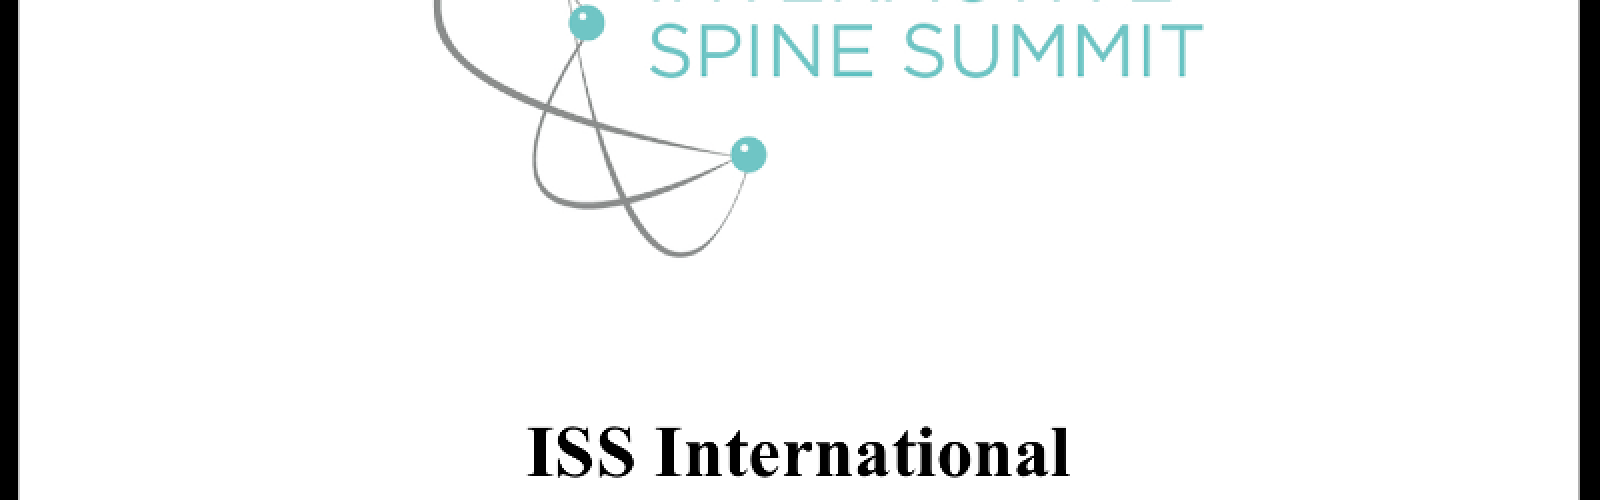 Spine Summit Interactive cartel